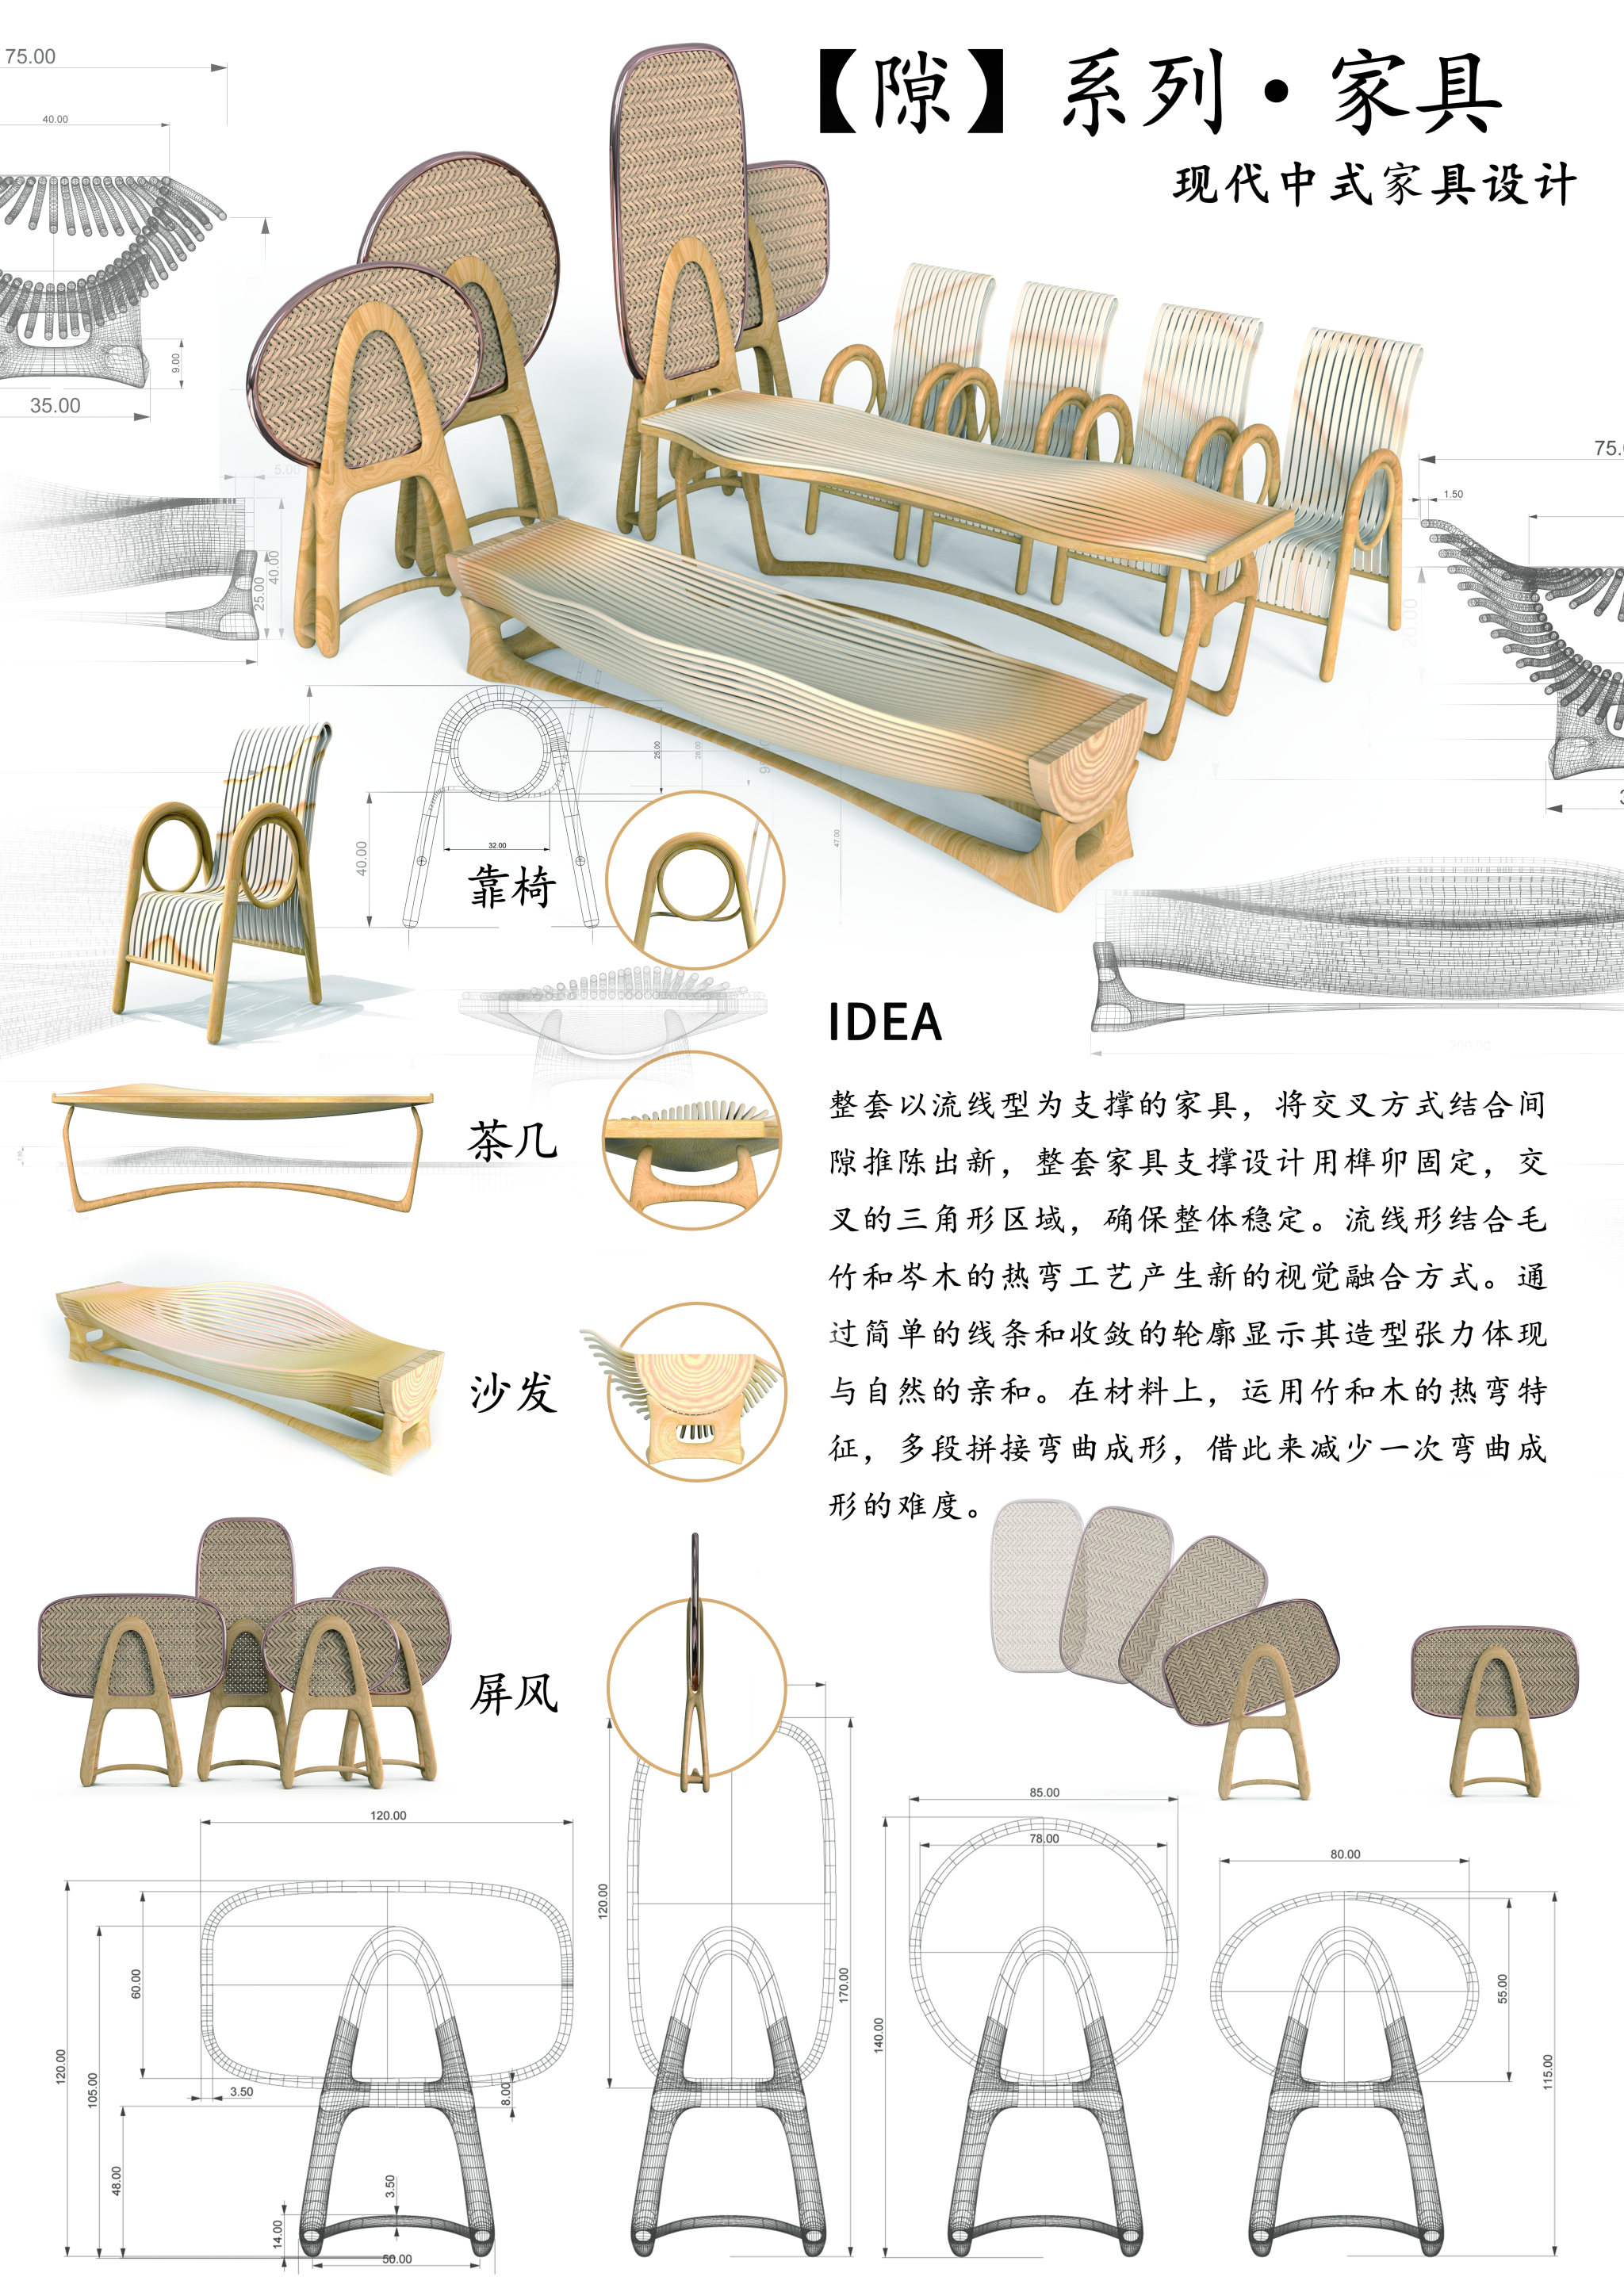 隙系列竹家具现代中式家具设计